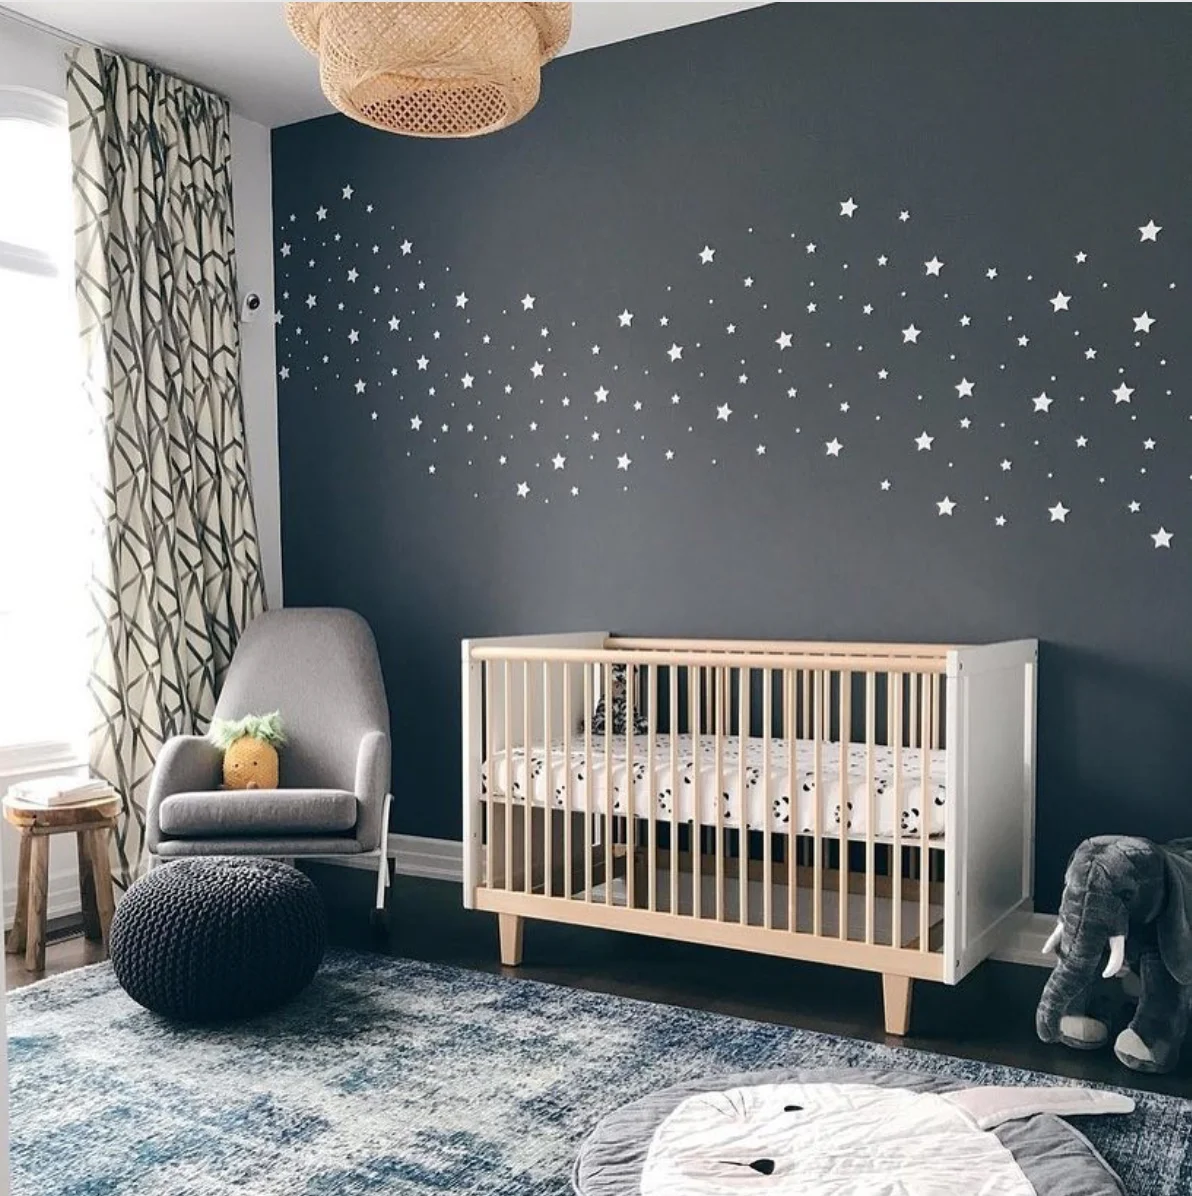 Celestial Nursery with Star Wall